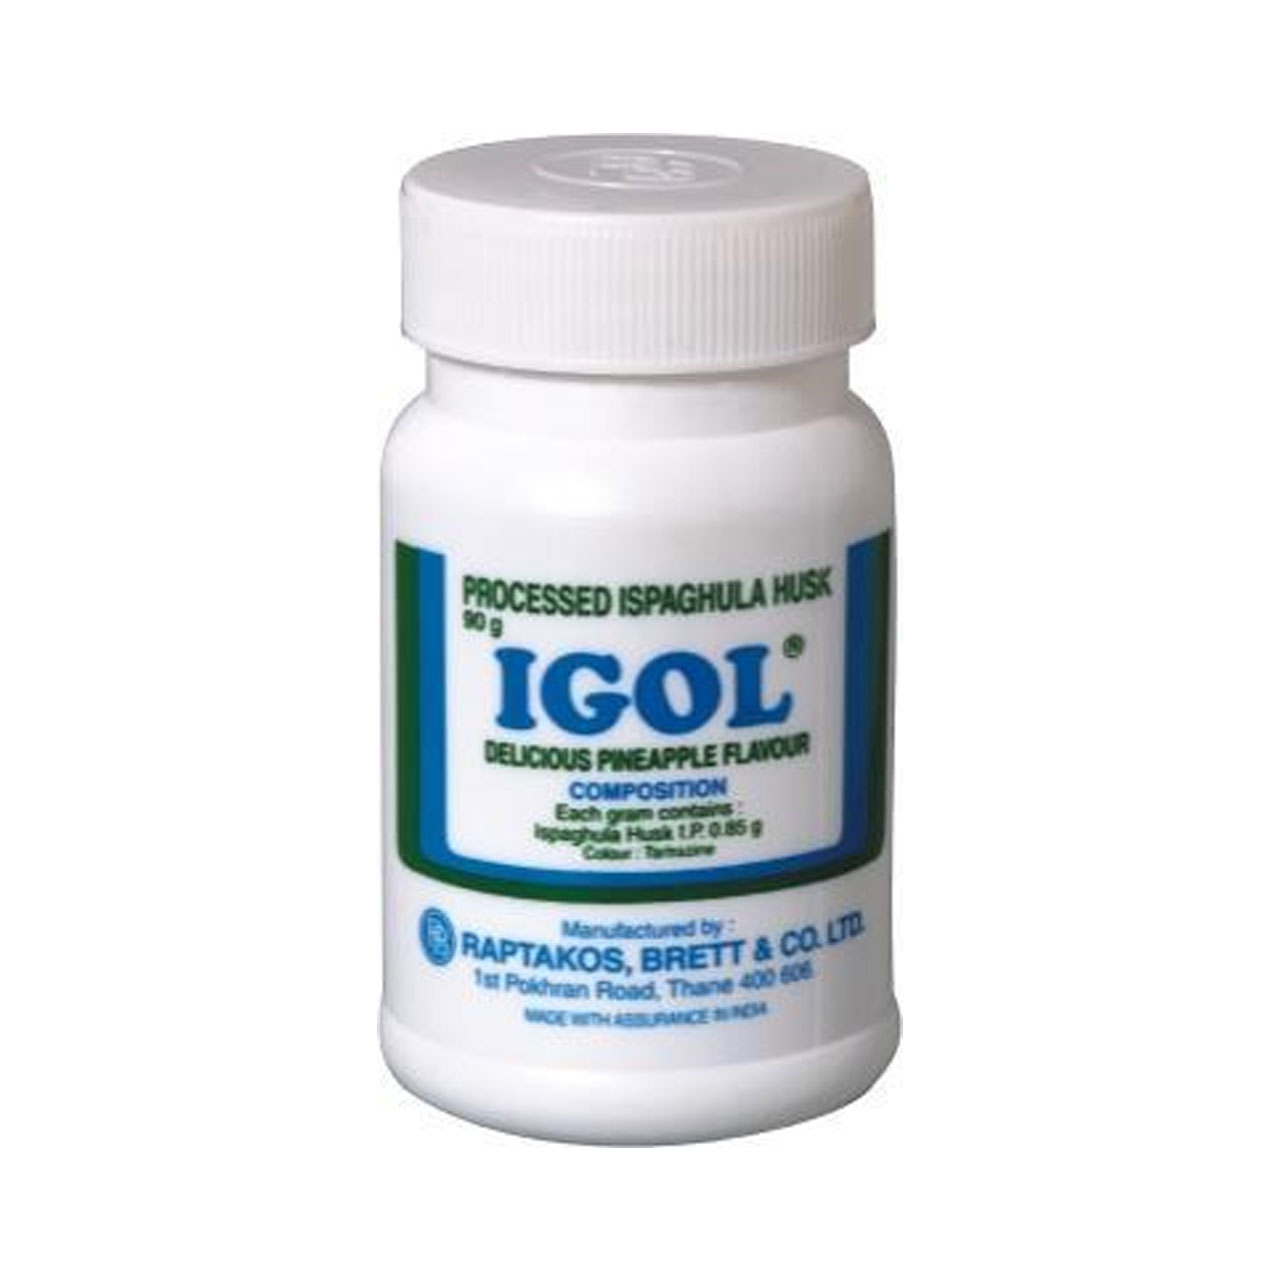 Thuốc Igol® có tác dụng như thế nào? 2